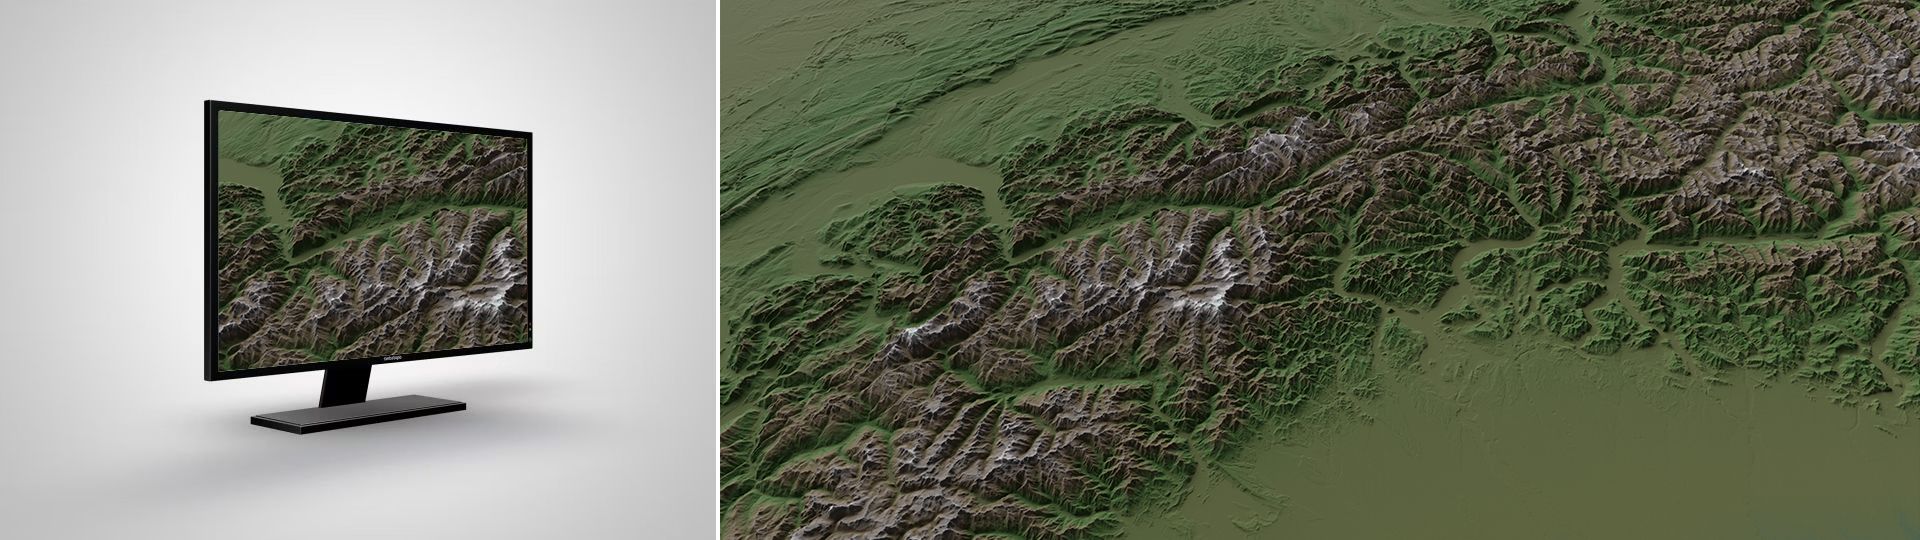 swissALTIRegio: il modello altitudinale della Svizzera su piccola scala